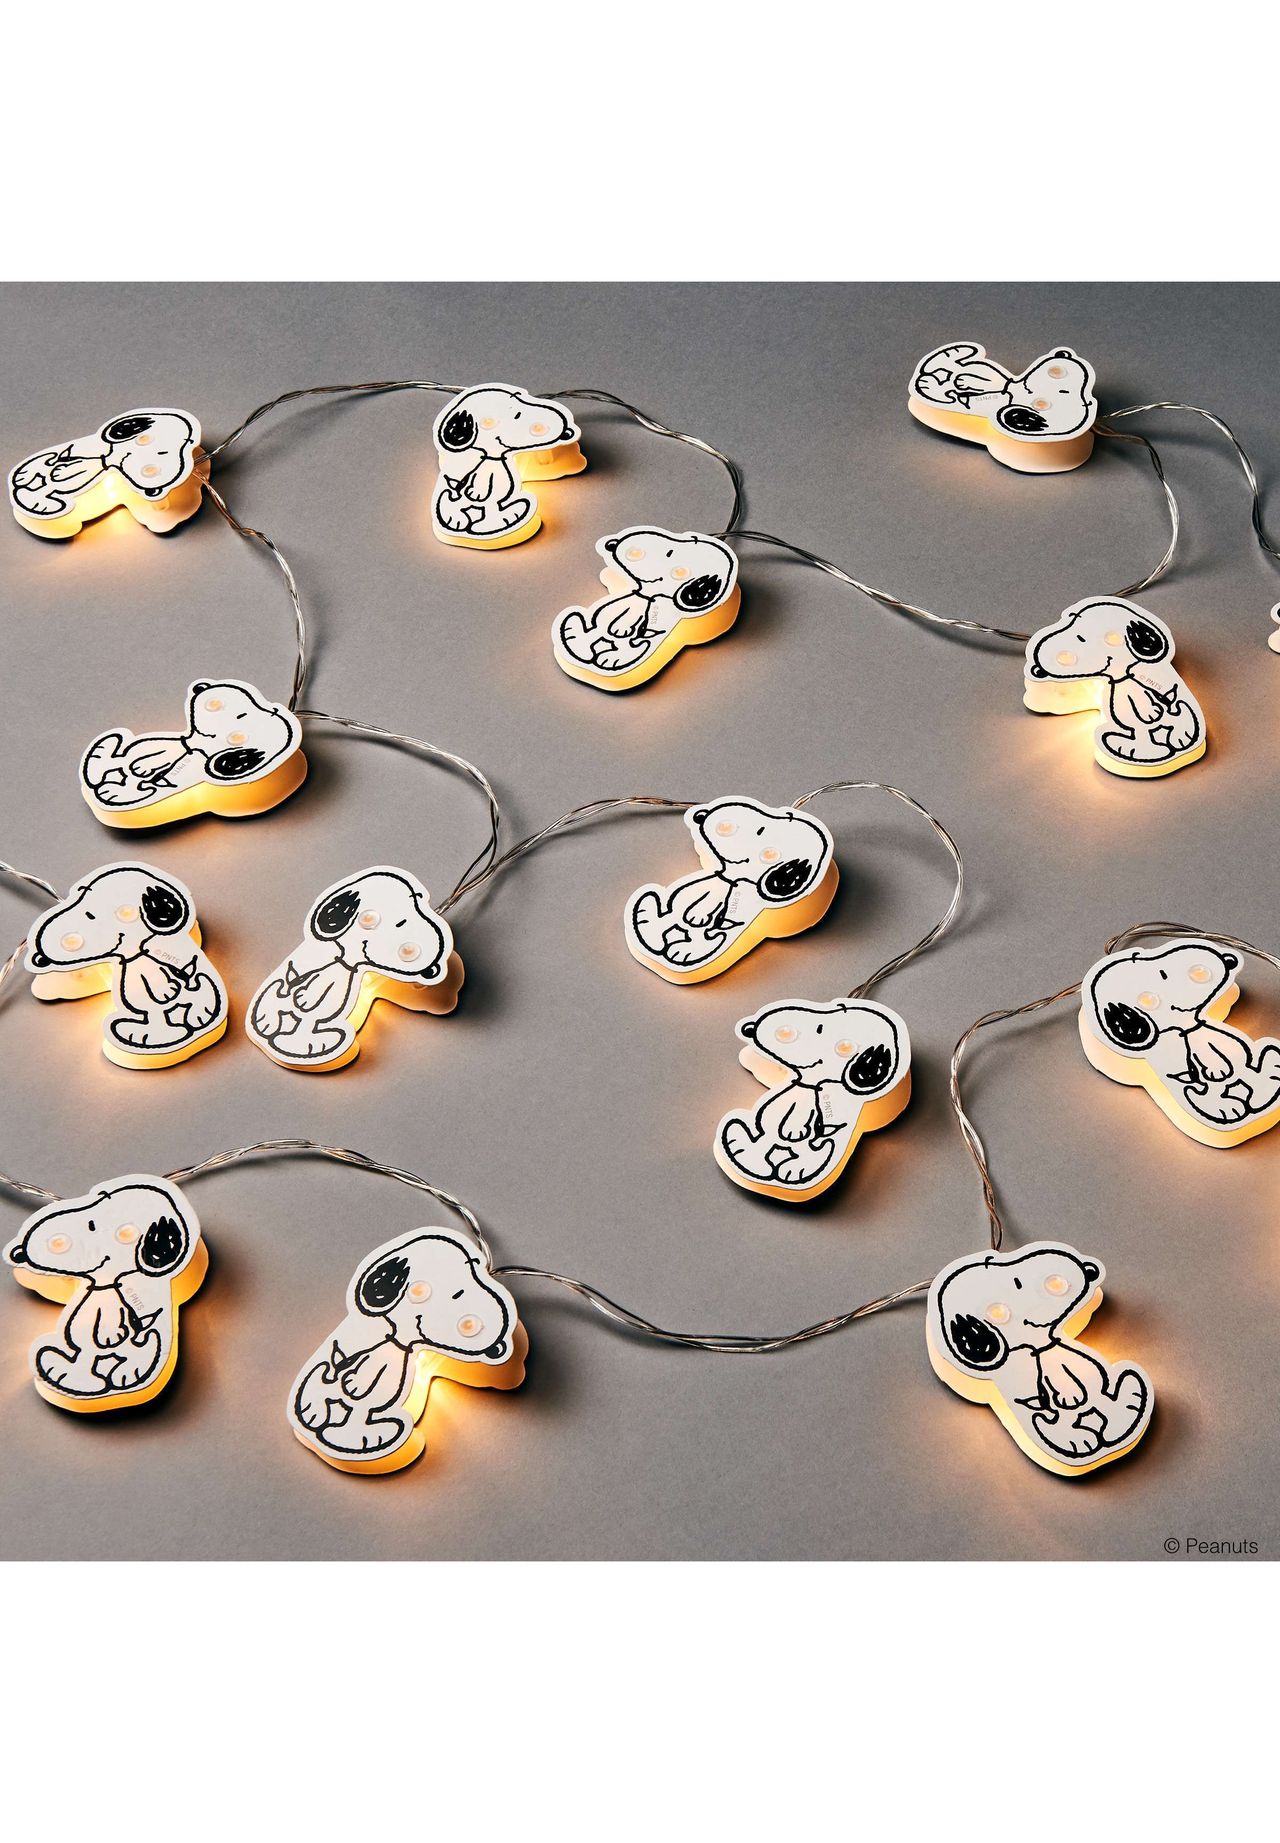 Wohnen Lampen & Leuchten BUTLERS® PEANUTS LED-Lichterkette Snoopy 20 Lichter mit USB-Batteriefach